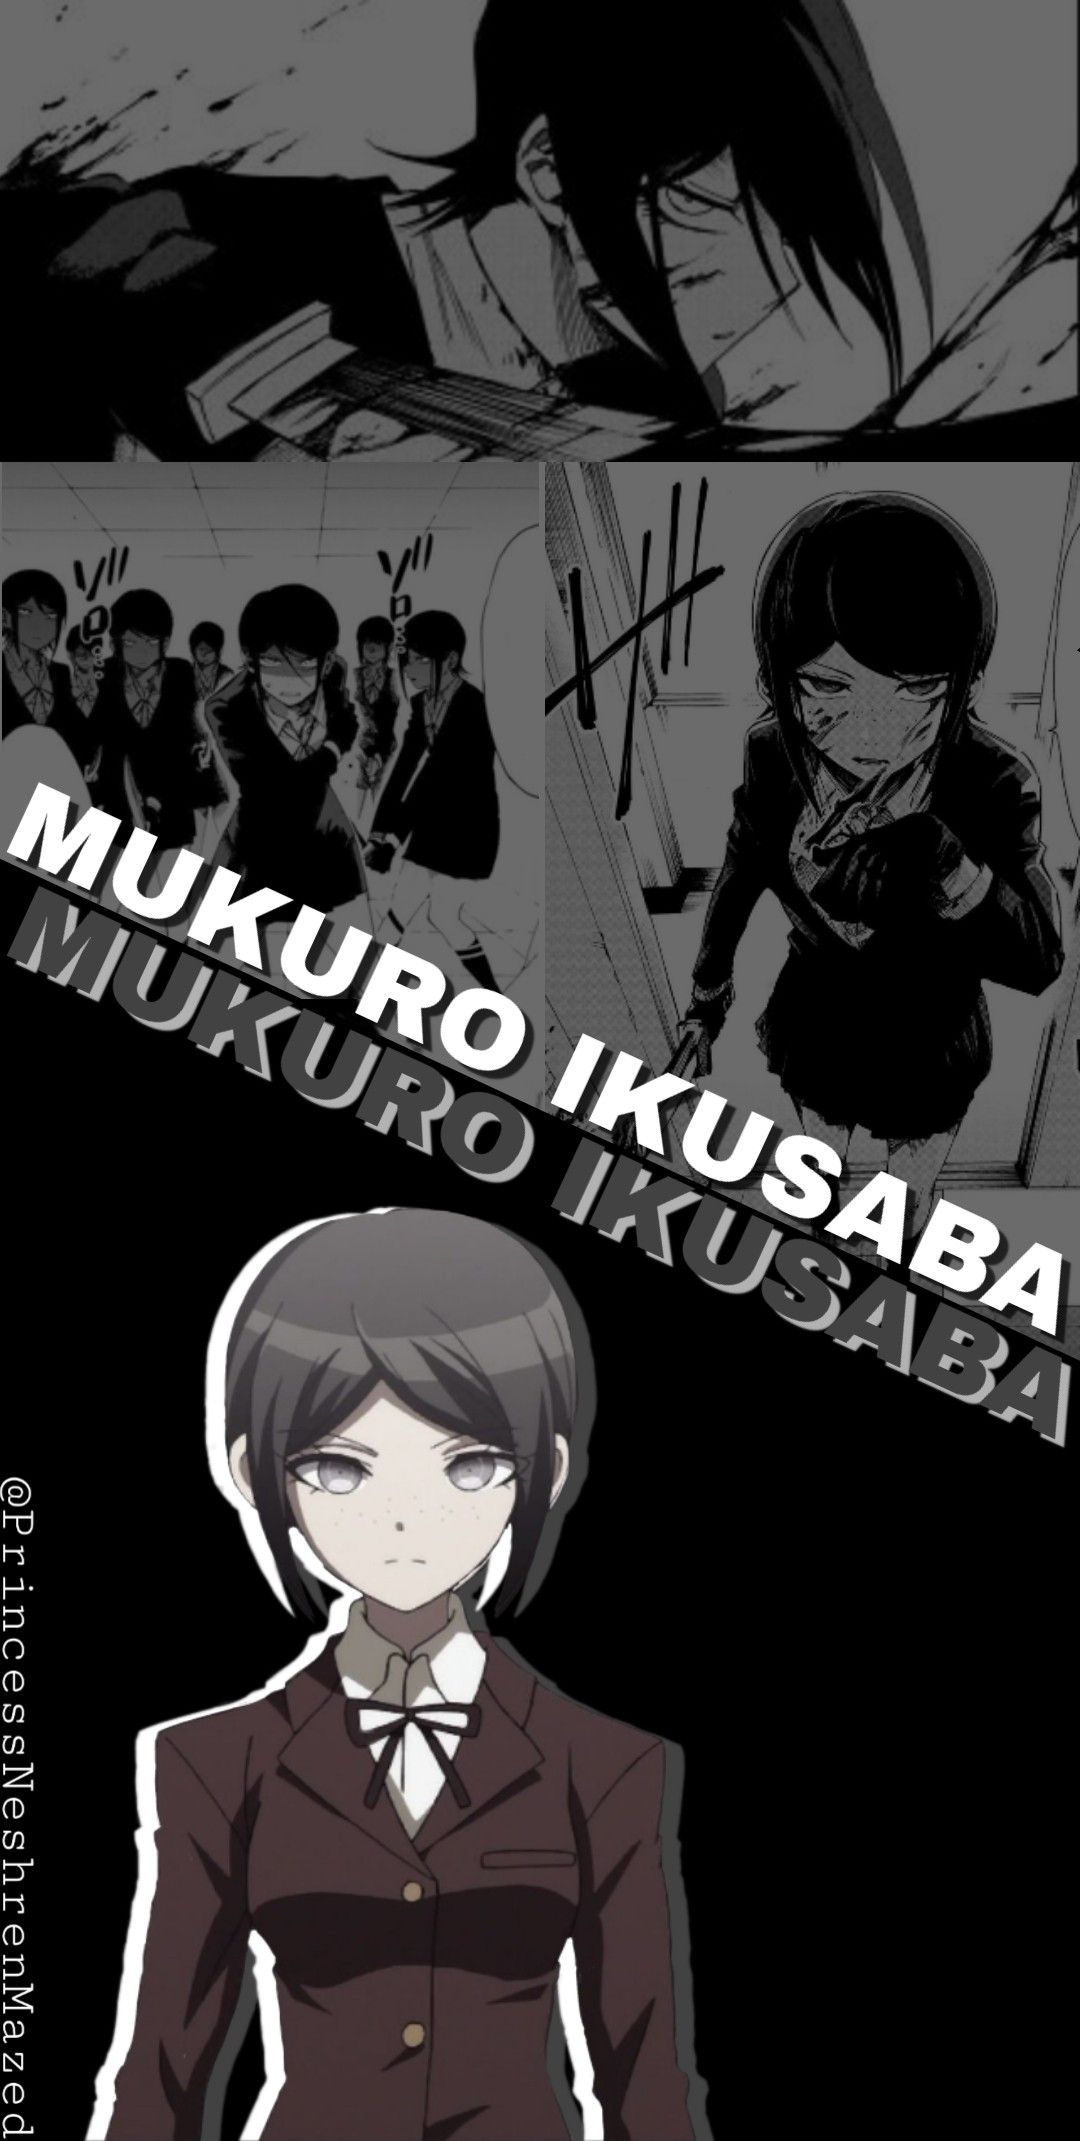 Mukuro Ikusaba wallpaper. Danganronpa, Danganronpa characters, Anime wallpaper